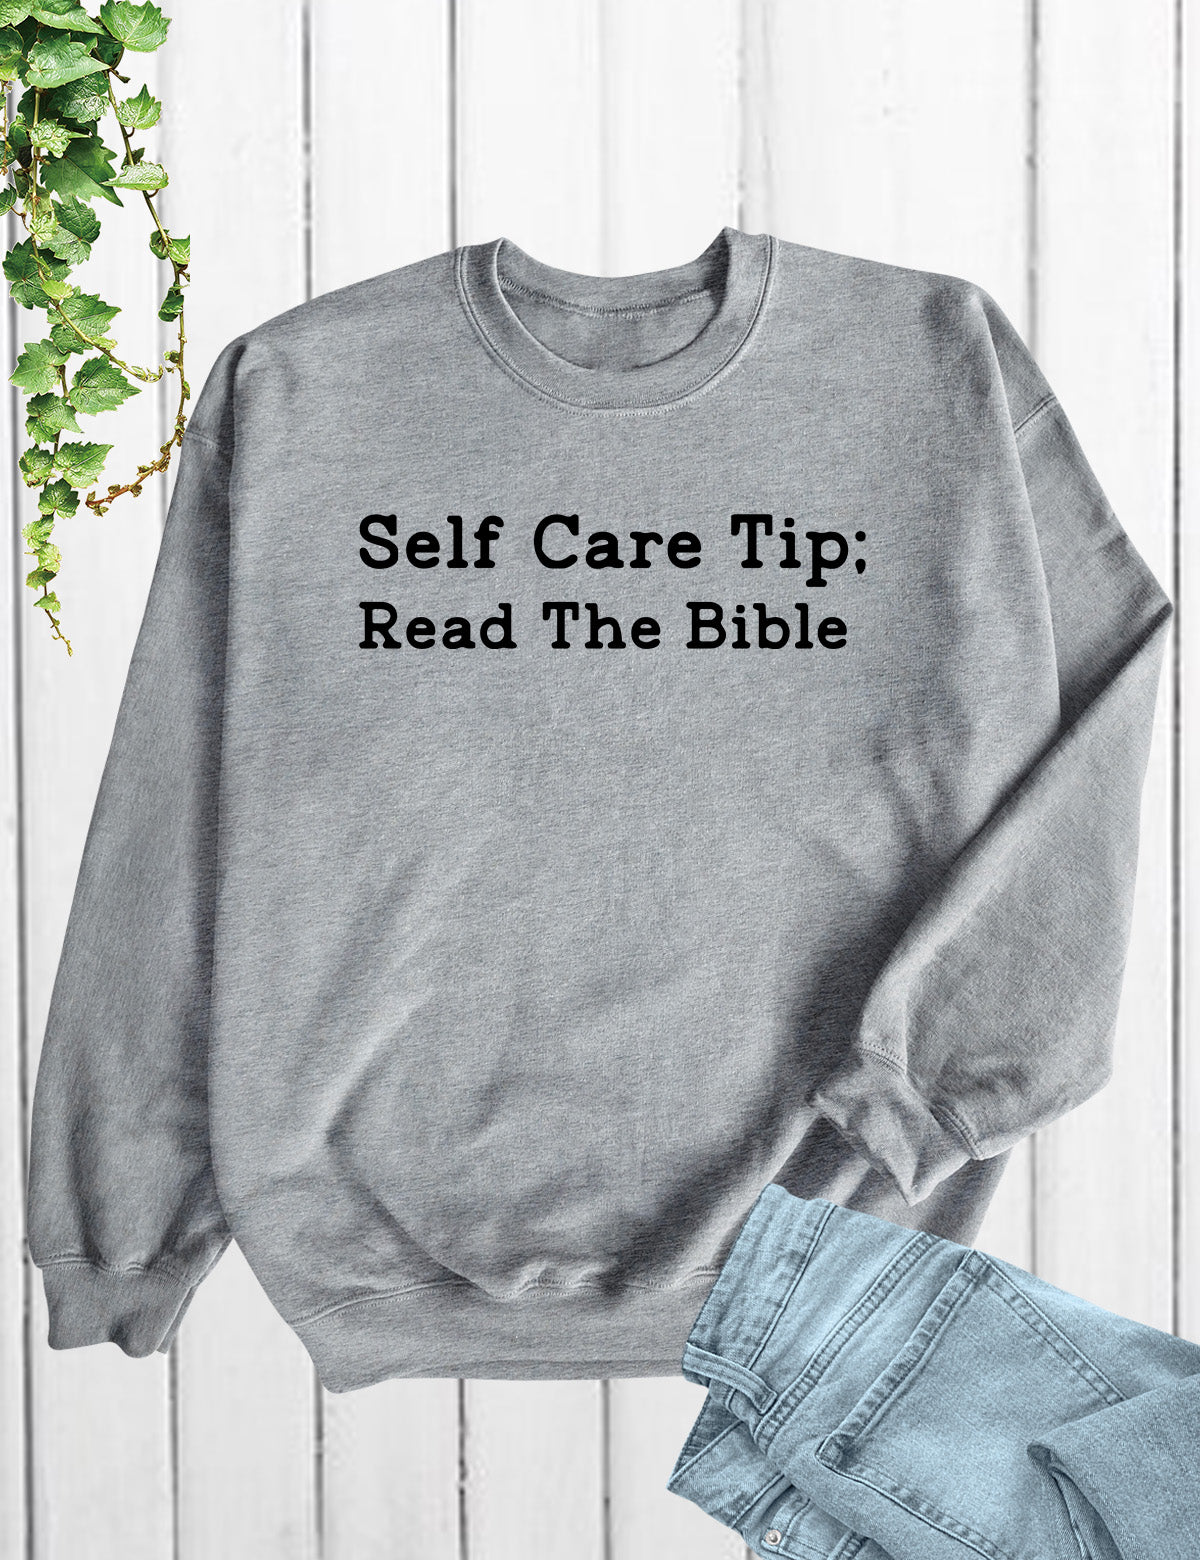 Read The Bible Sweatshirt Scripture Jumper